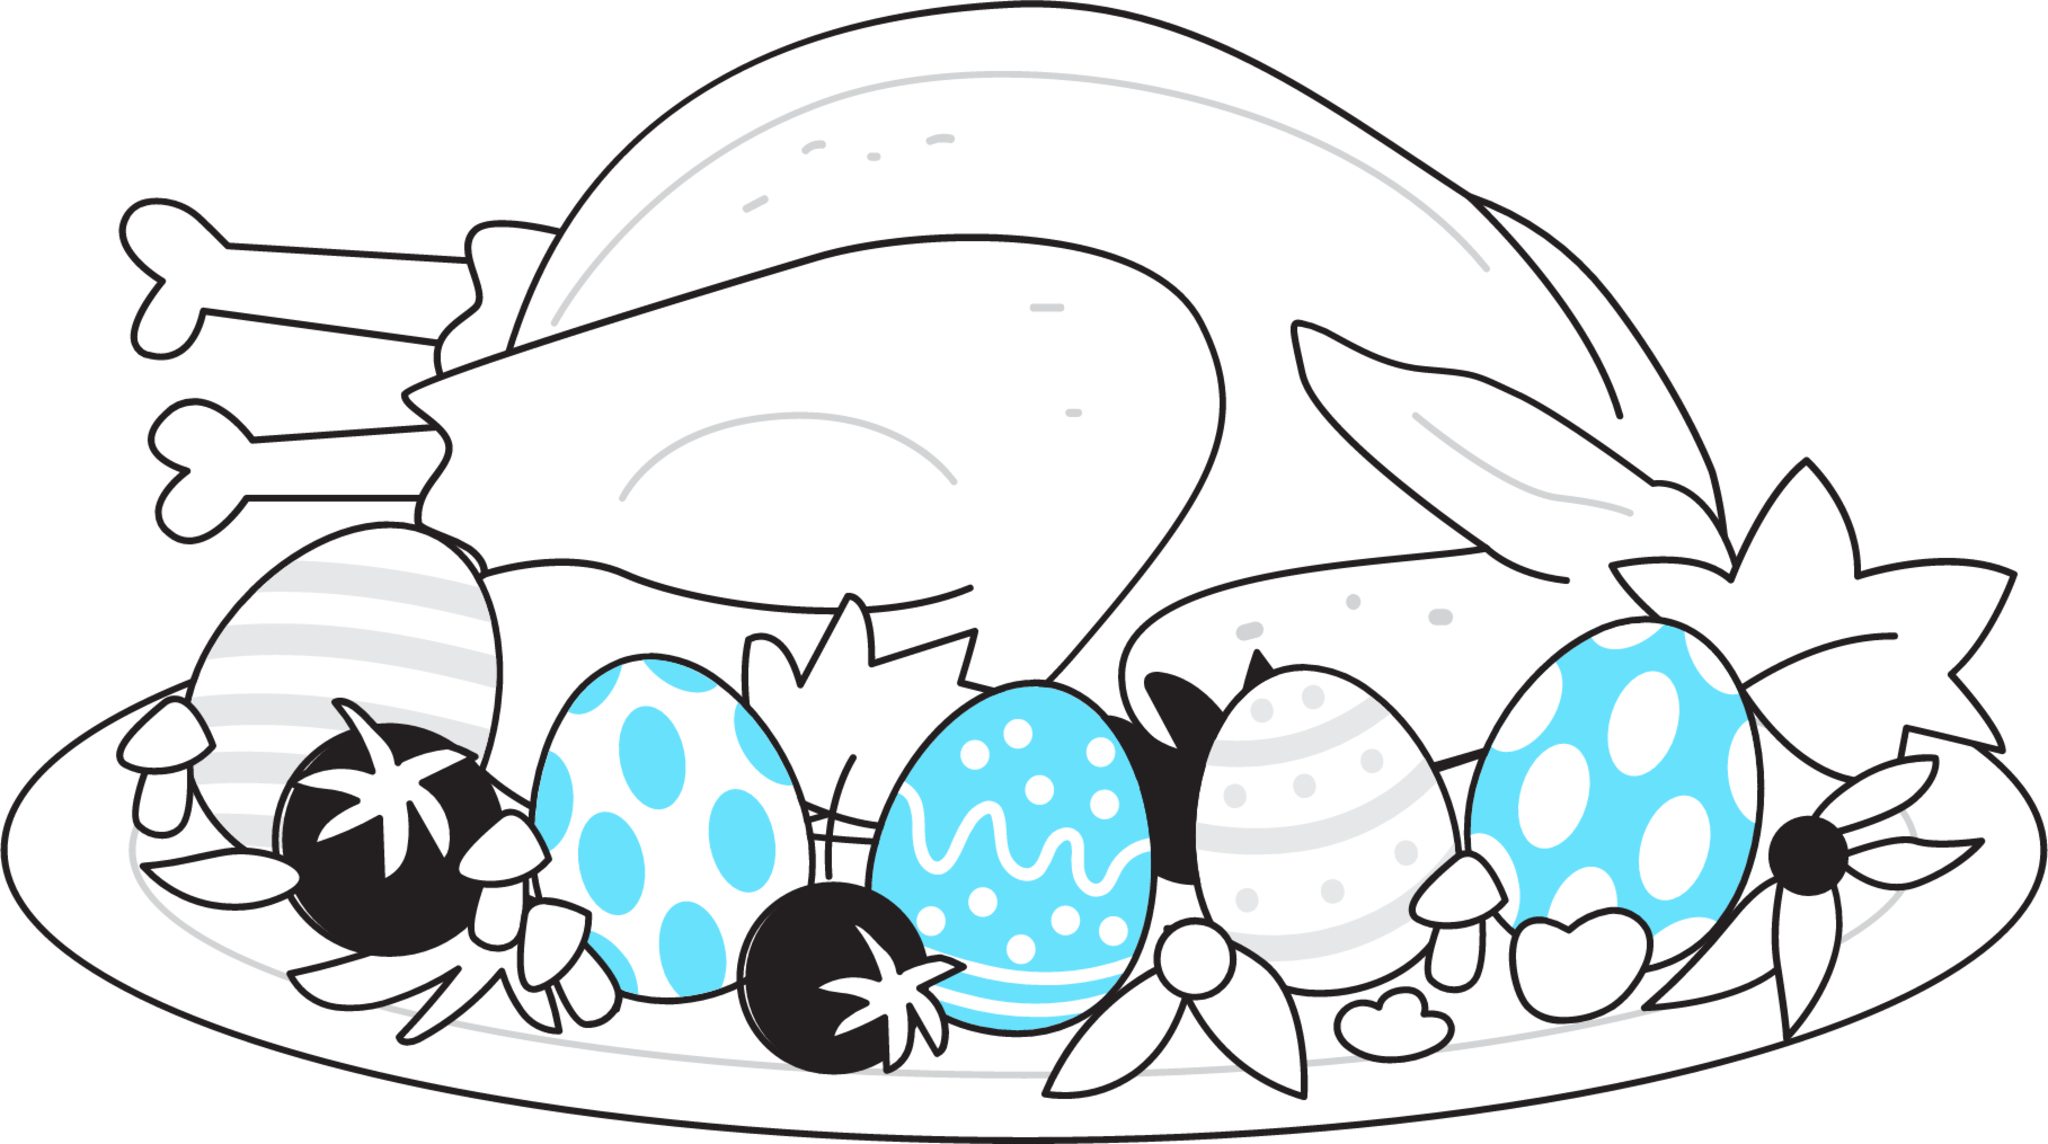 Easter meal illustration